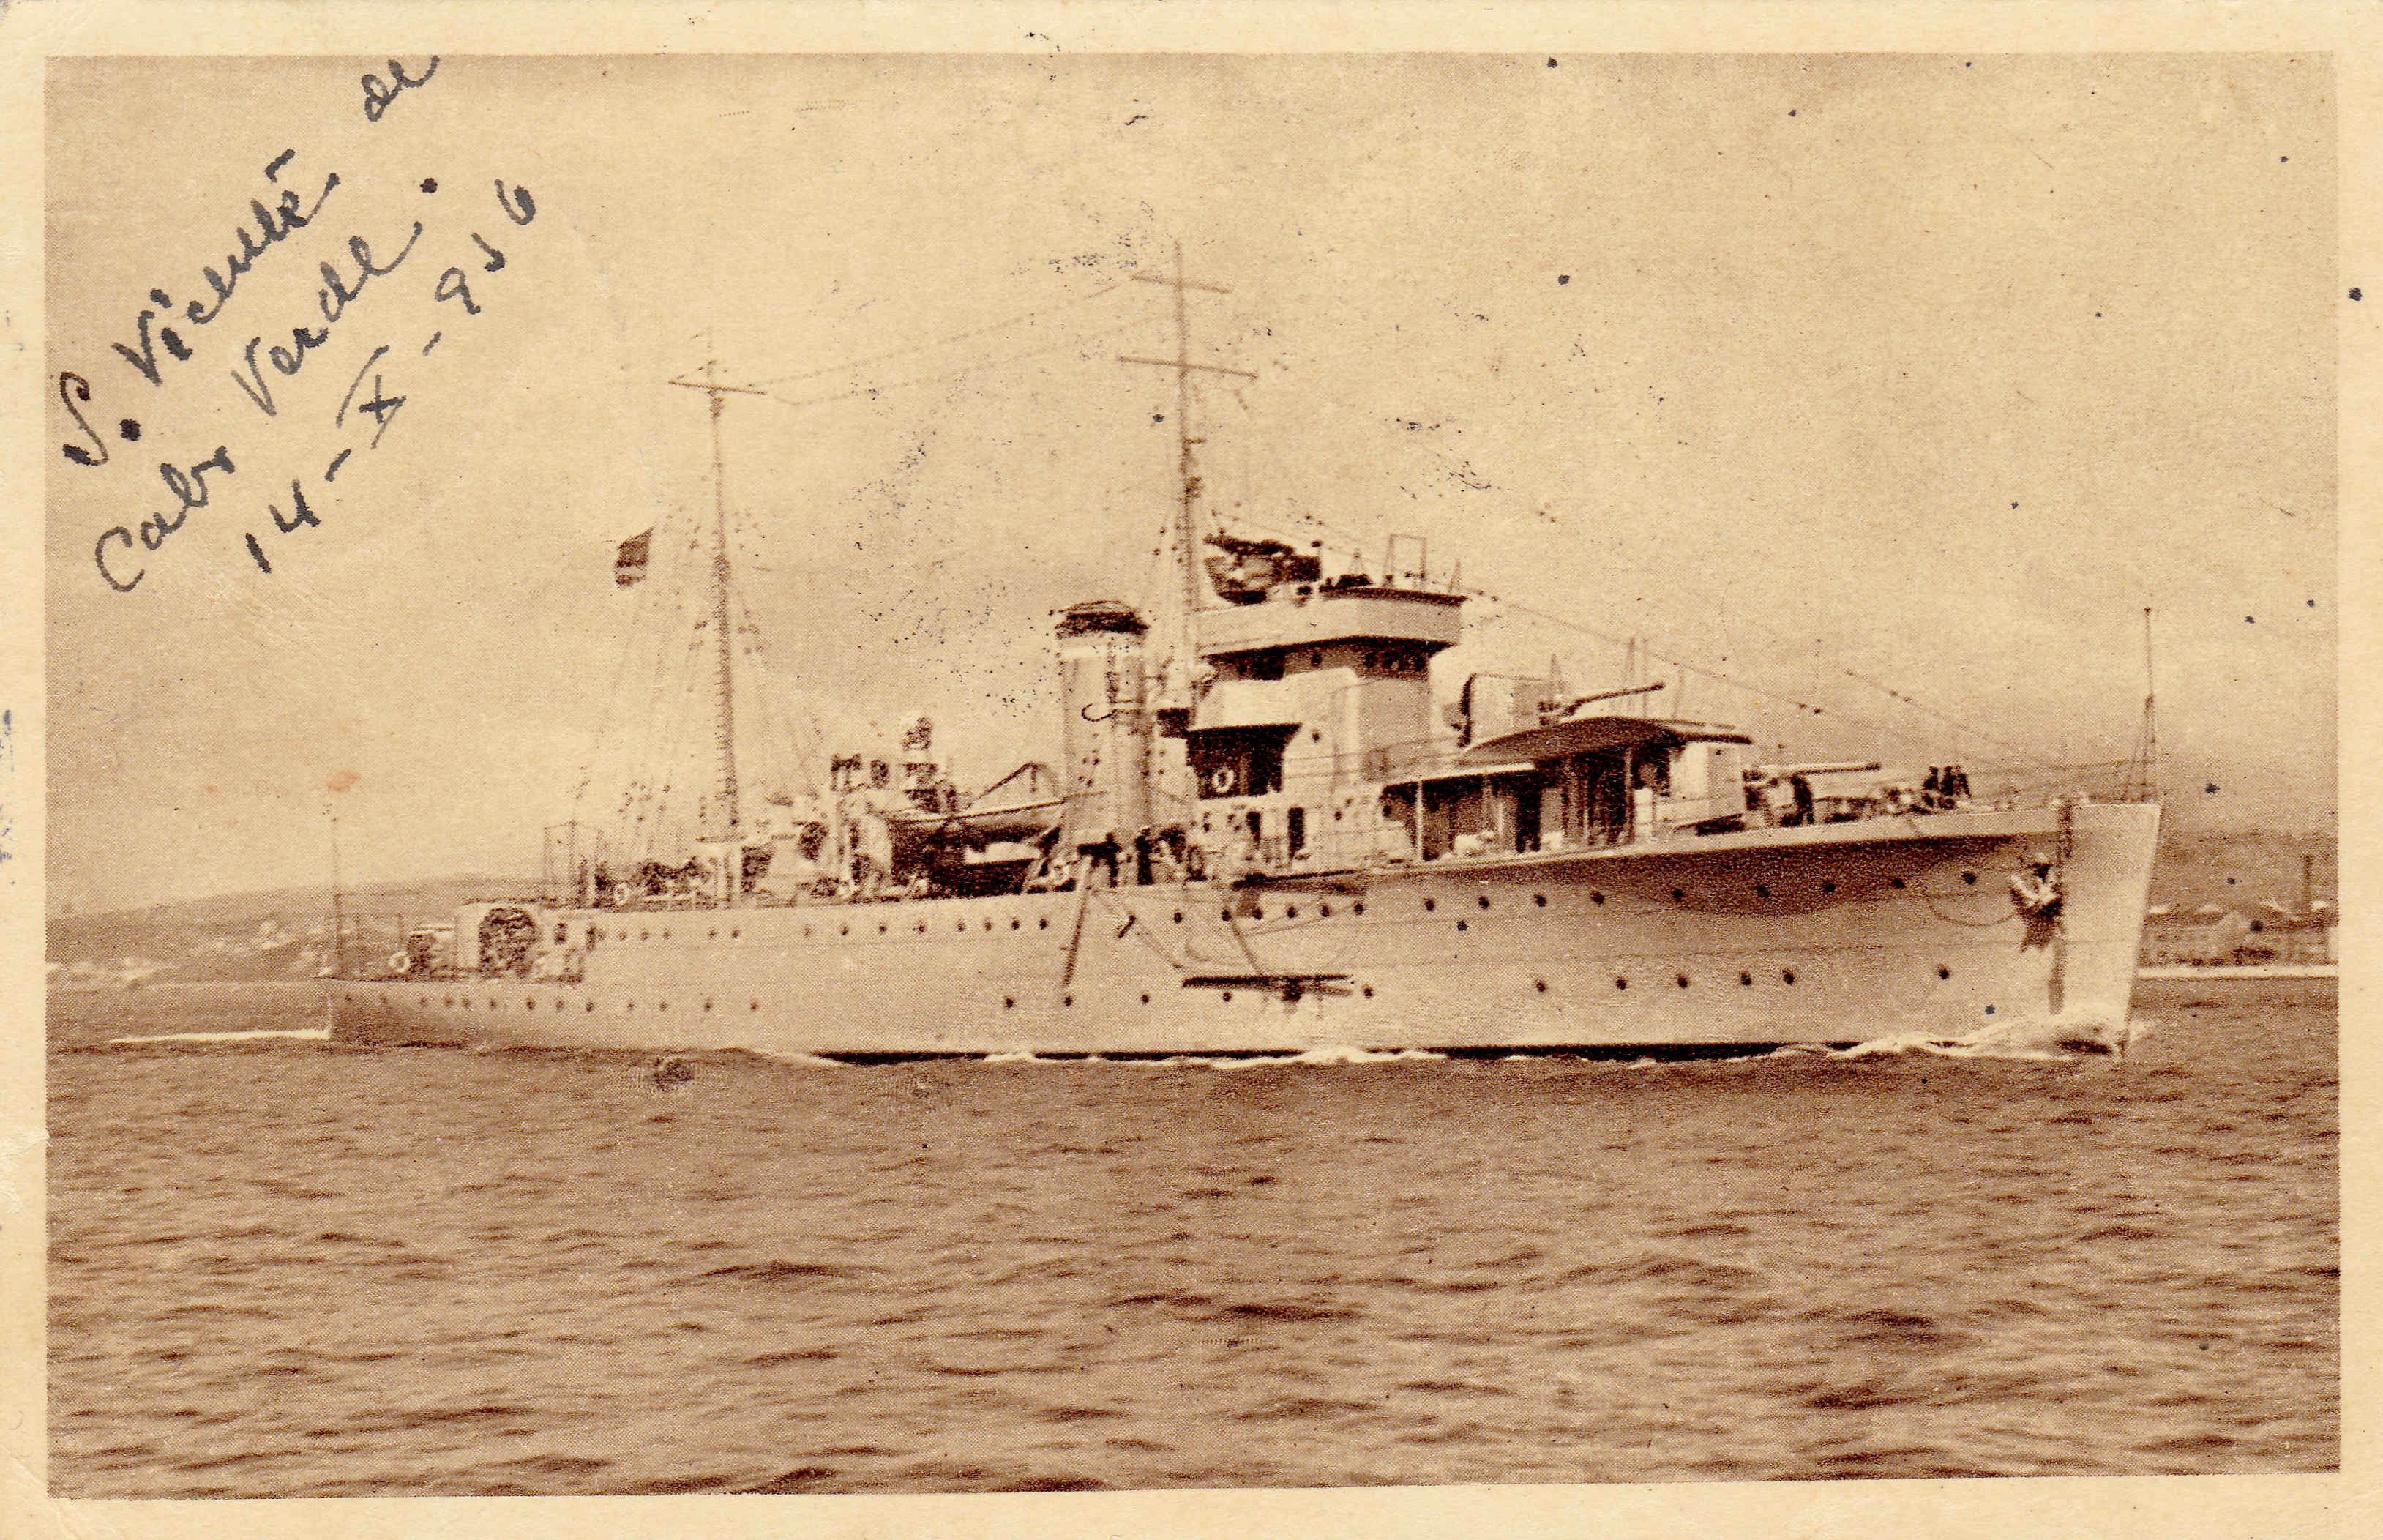 The Portuguese sloop Gonçalves Zarco 